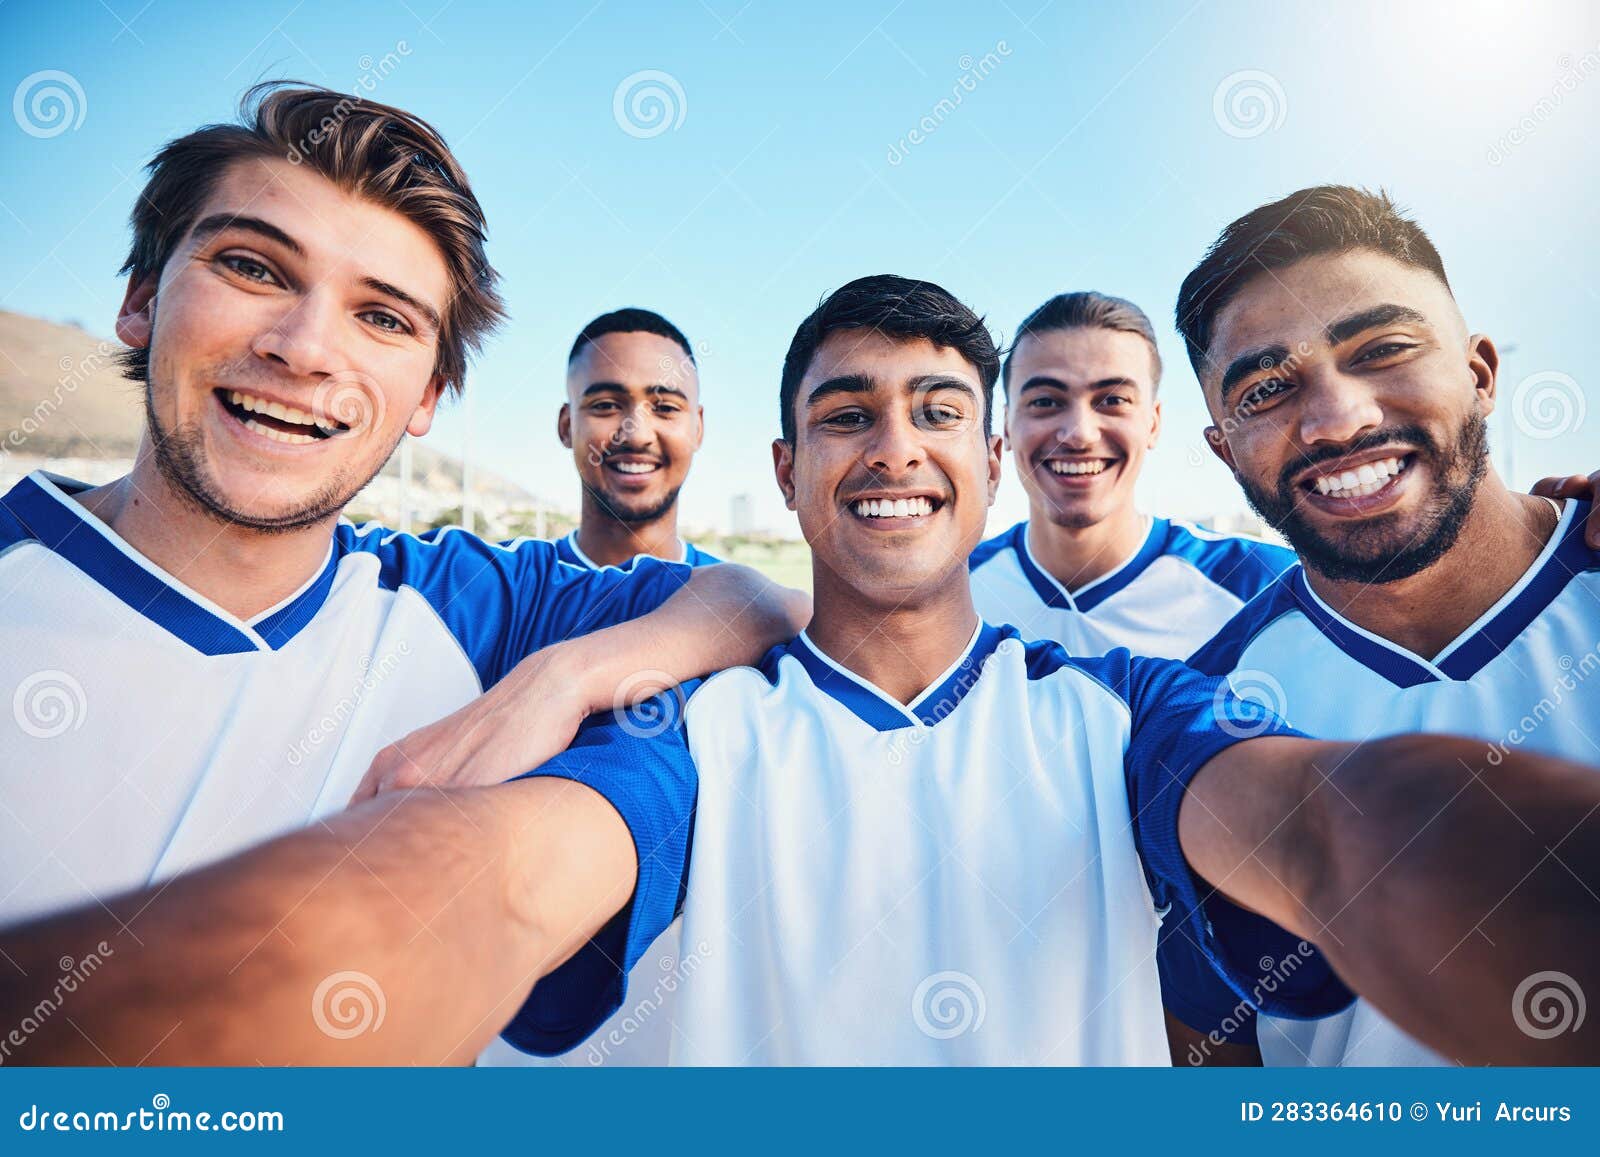 Soccer Player Men, Team Selfie and Field for Social Media Post, Memory ...